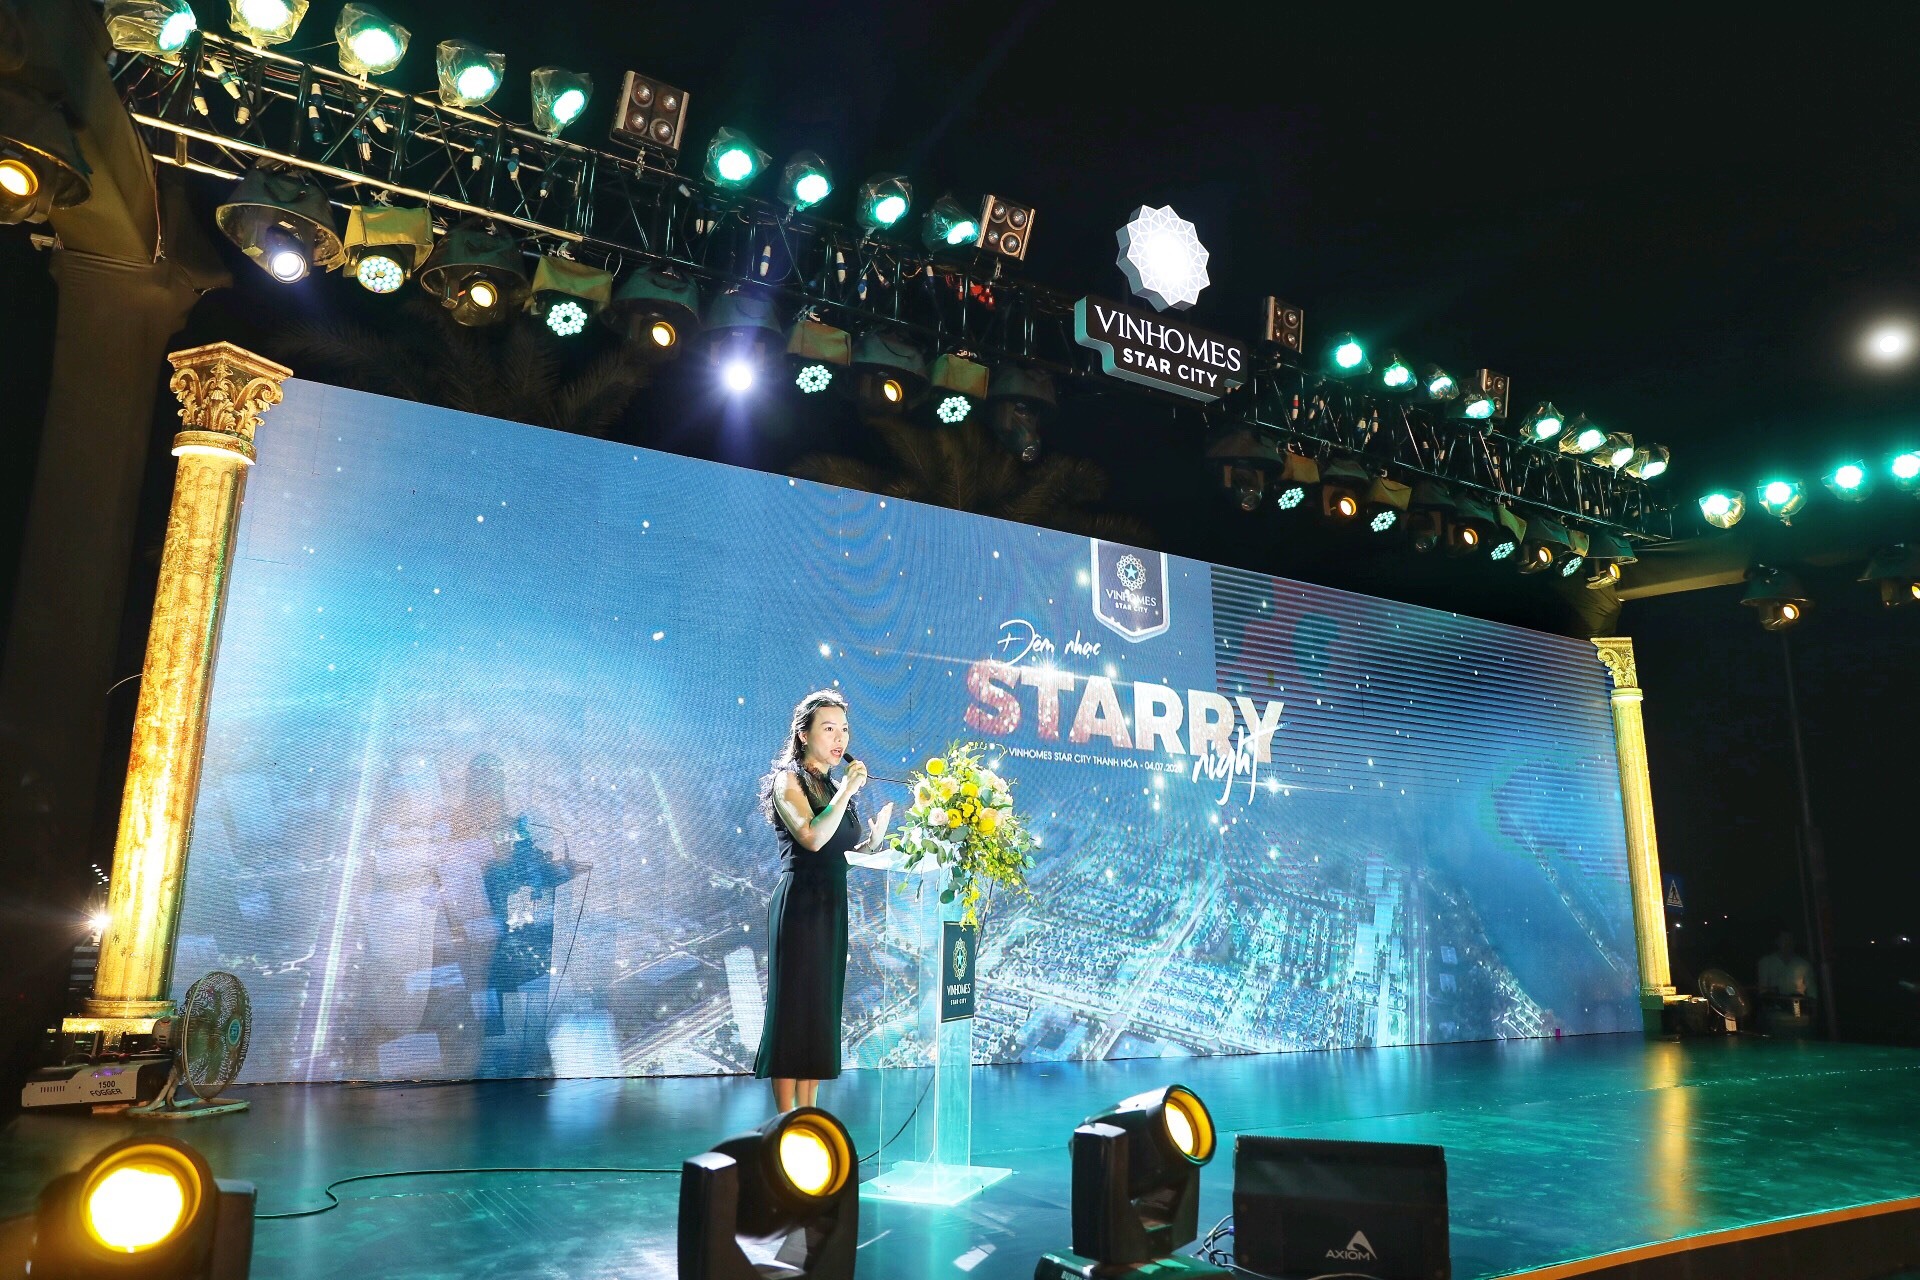 Đại diện chủ đầu tư, Bà Phan Diệu Thúy – Giám đốc Kinh doanh Vinhomes phát biểu tại đêm nhạc.